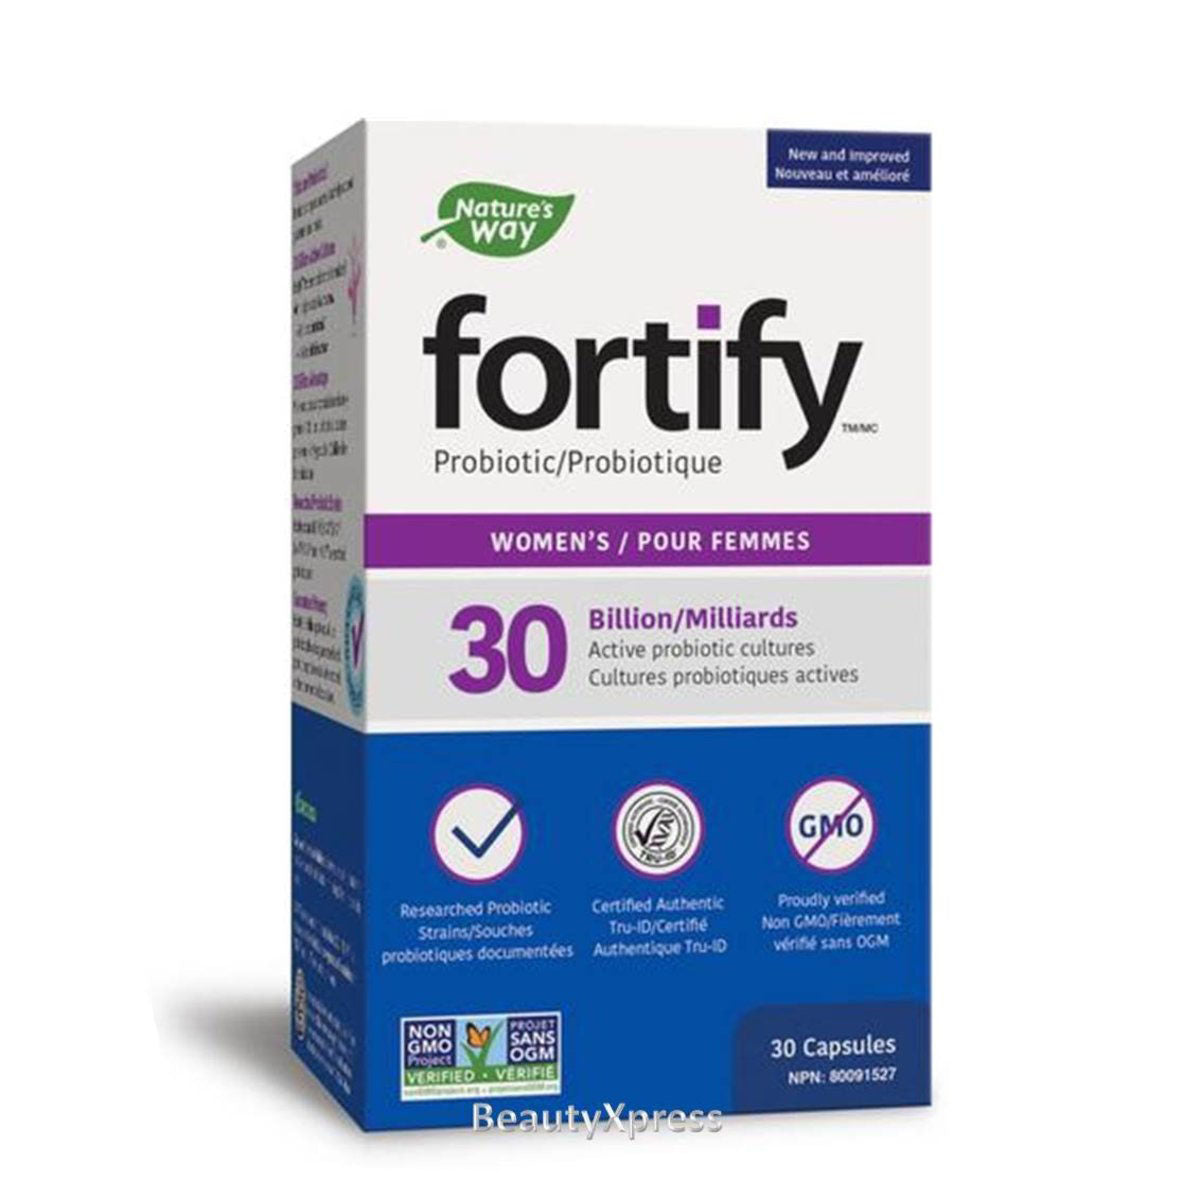 Nature's Way Fortify® 高效純天然益生菌 300 億 (女士配方) 30 粒素食膠囊